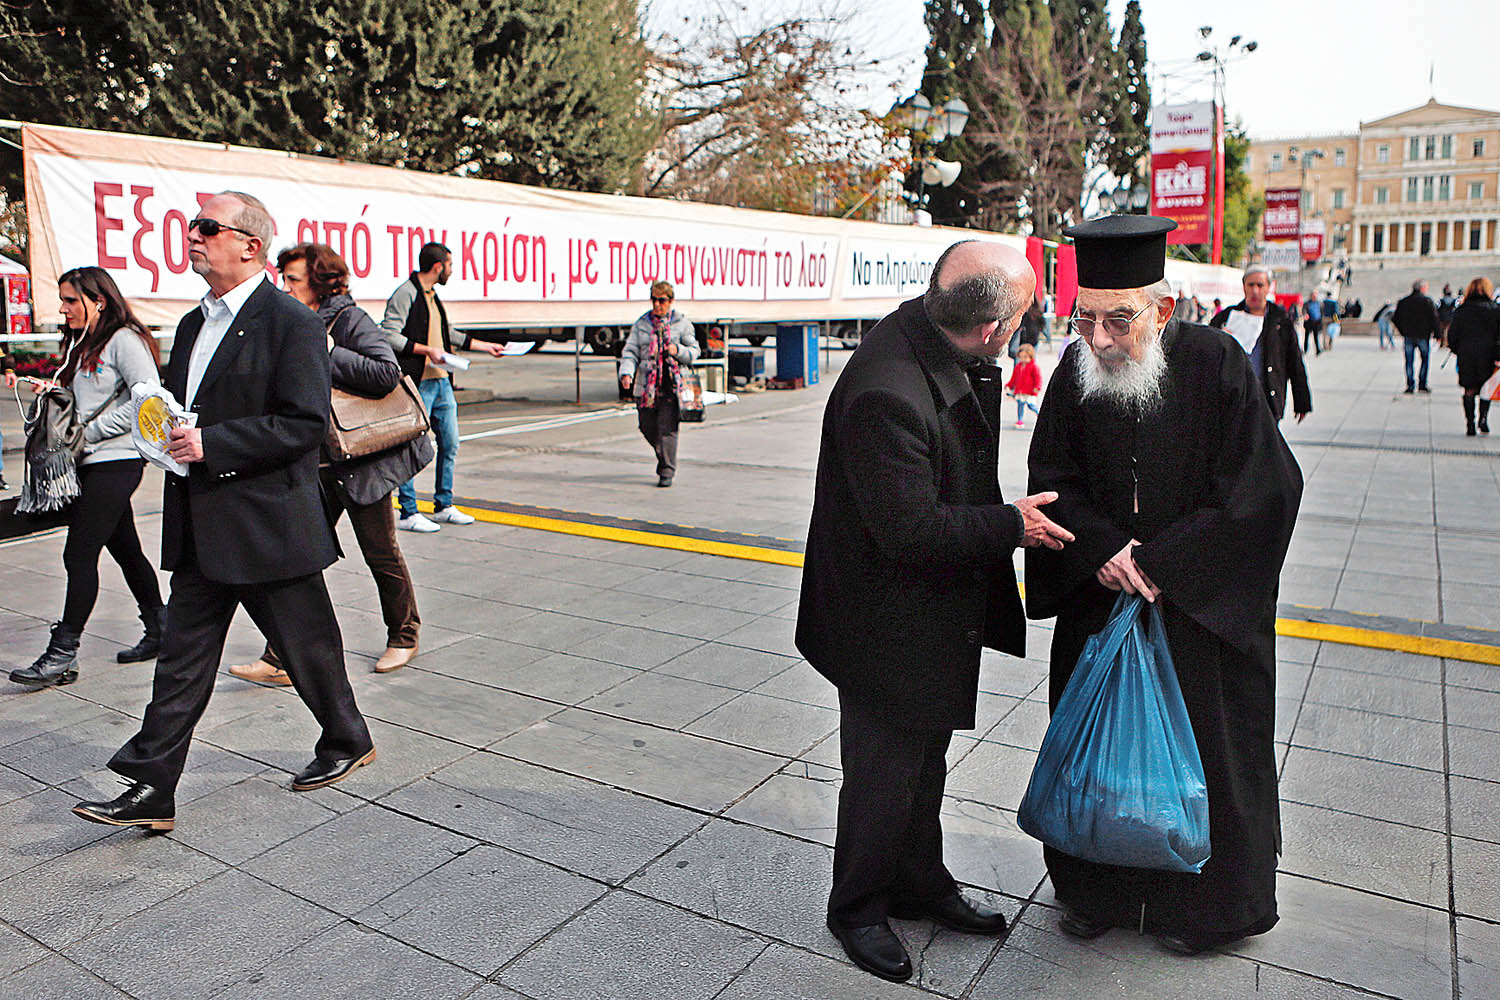 Ortodox pap beszélget egy athéni járókelővel a kommunisták plakátja előtt